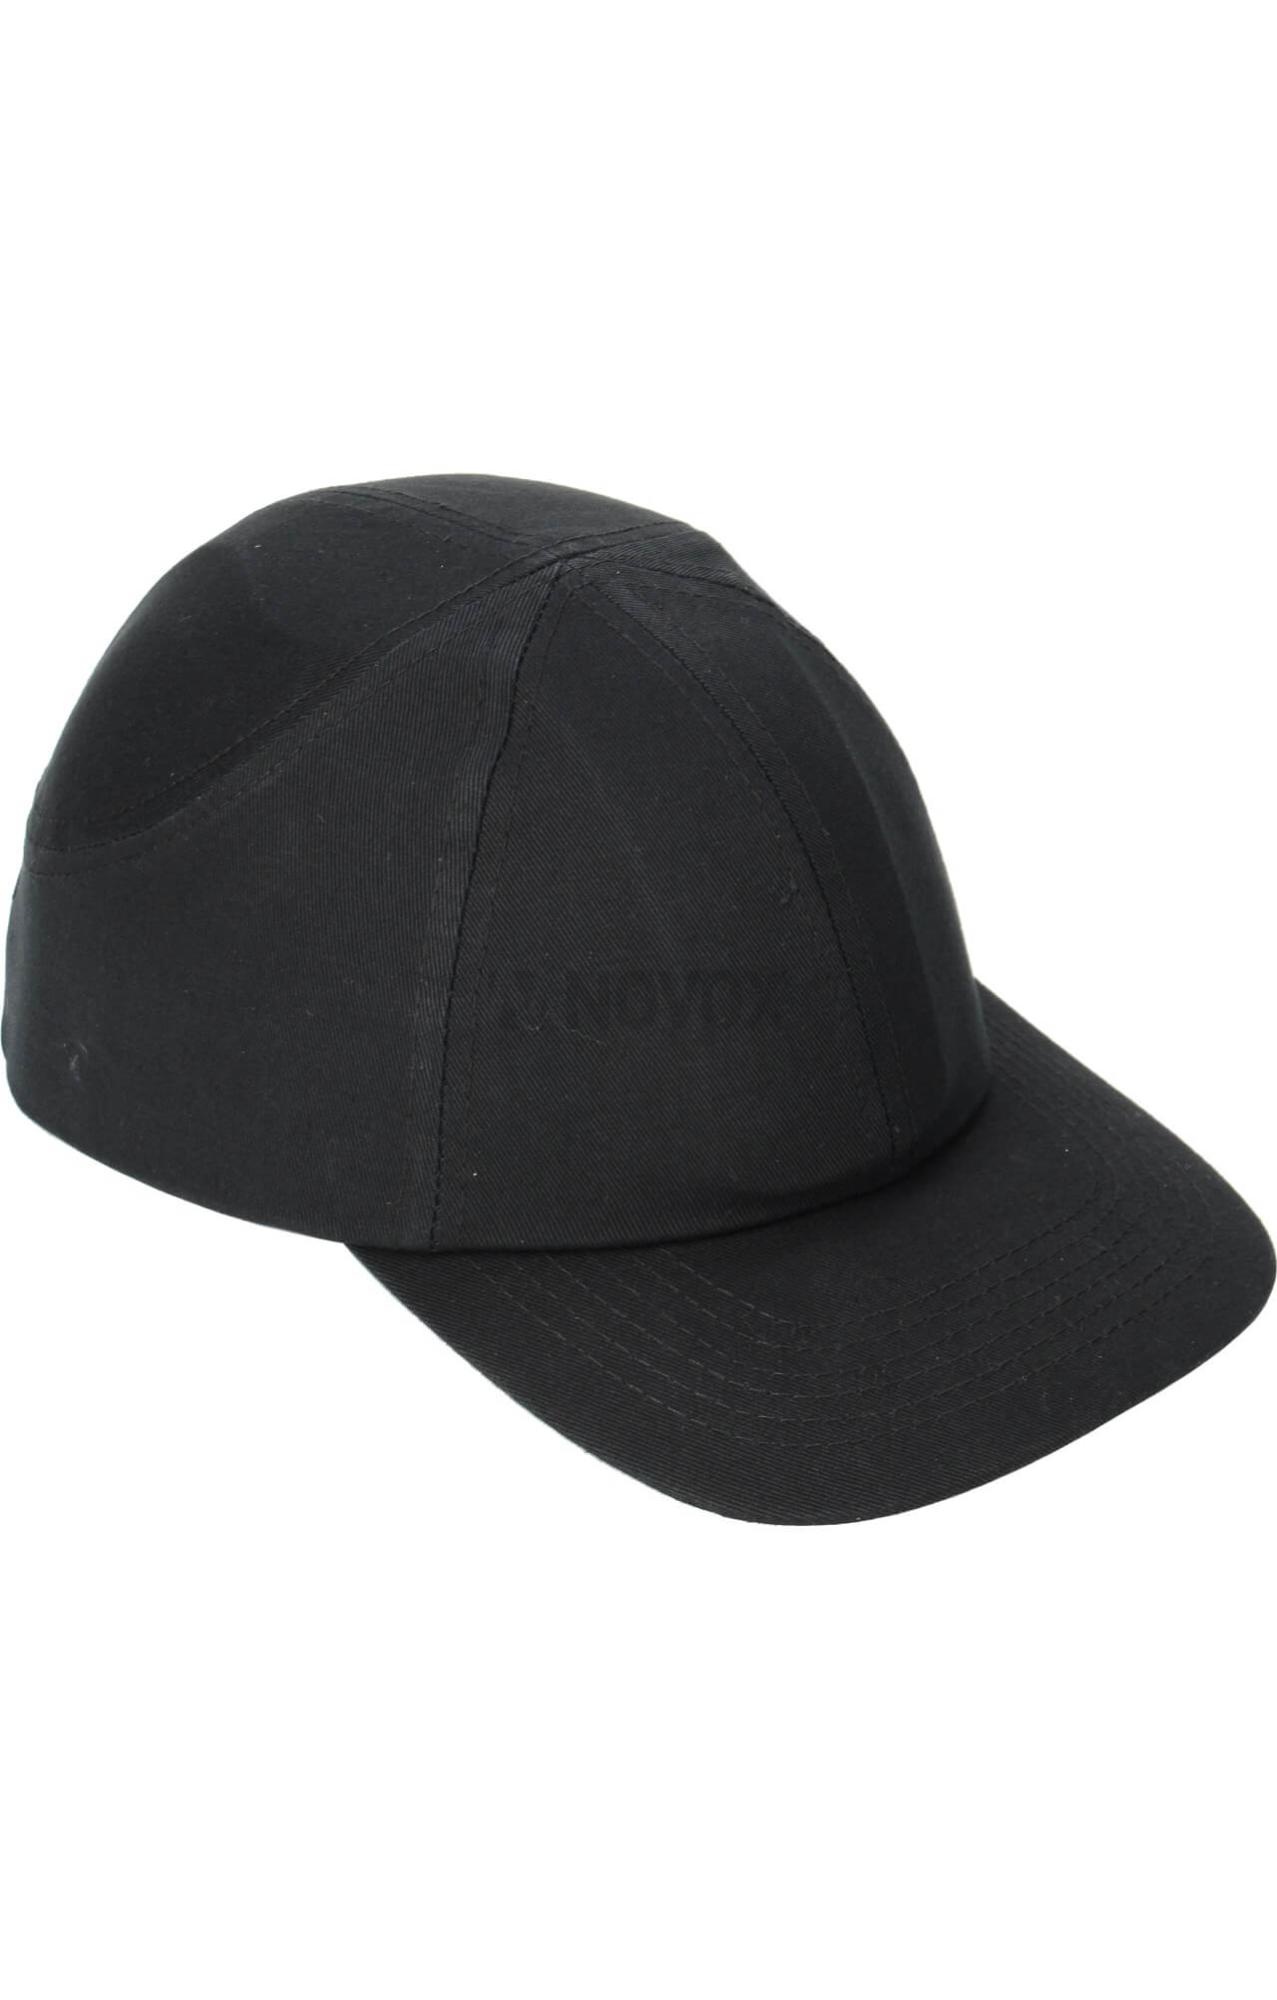 Каскетка защитная СОМЗ RZ FavoriT CAP (Фаворит Кэп) черная арт.95520